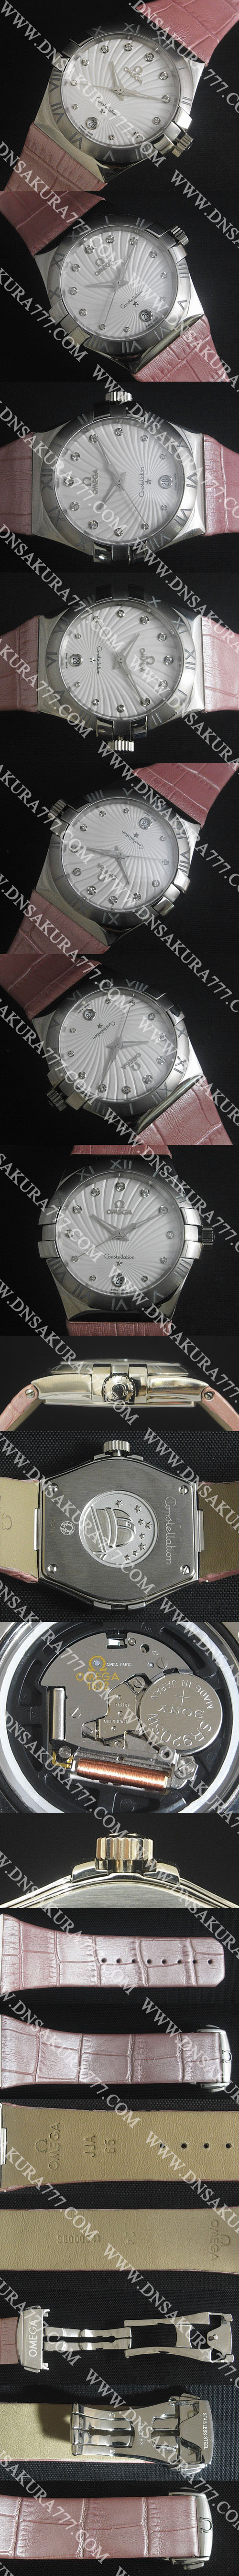 絶好な腕時計オメガ コンステレーション35mmホワイト